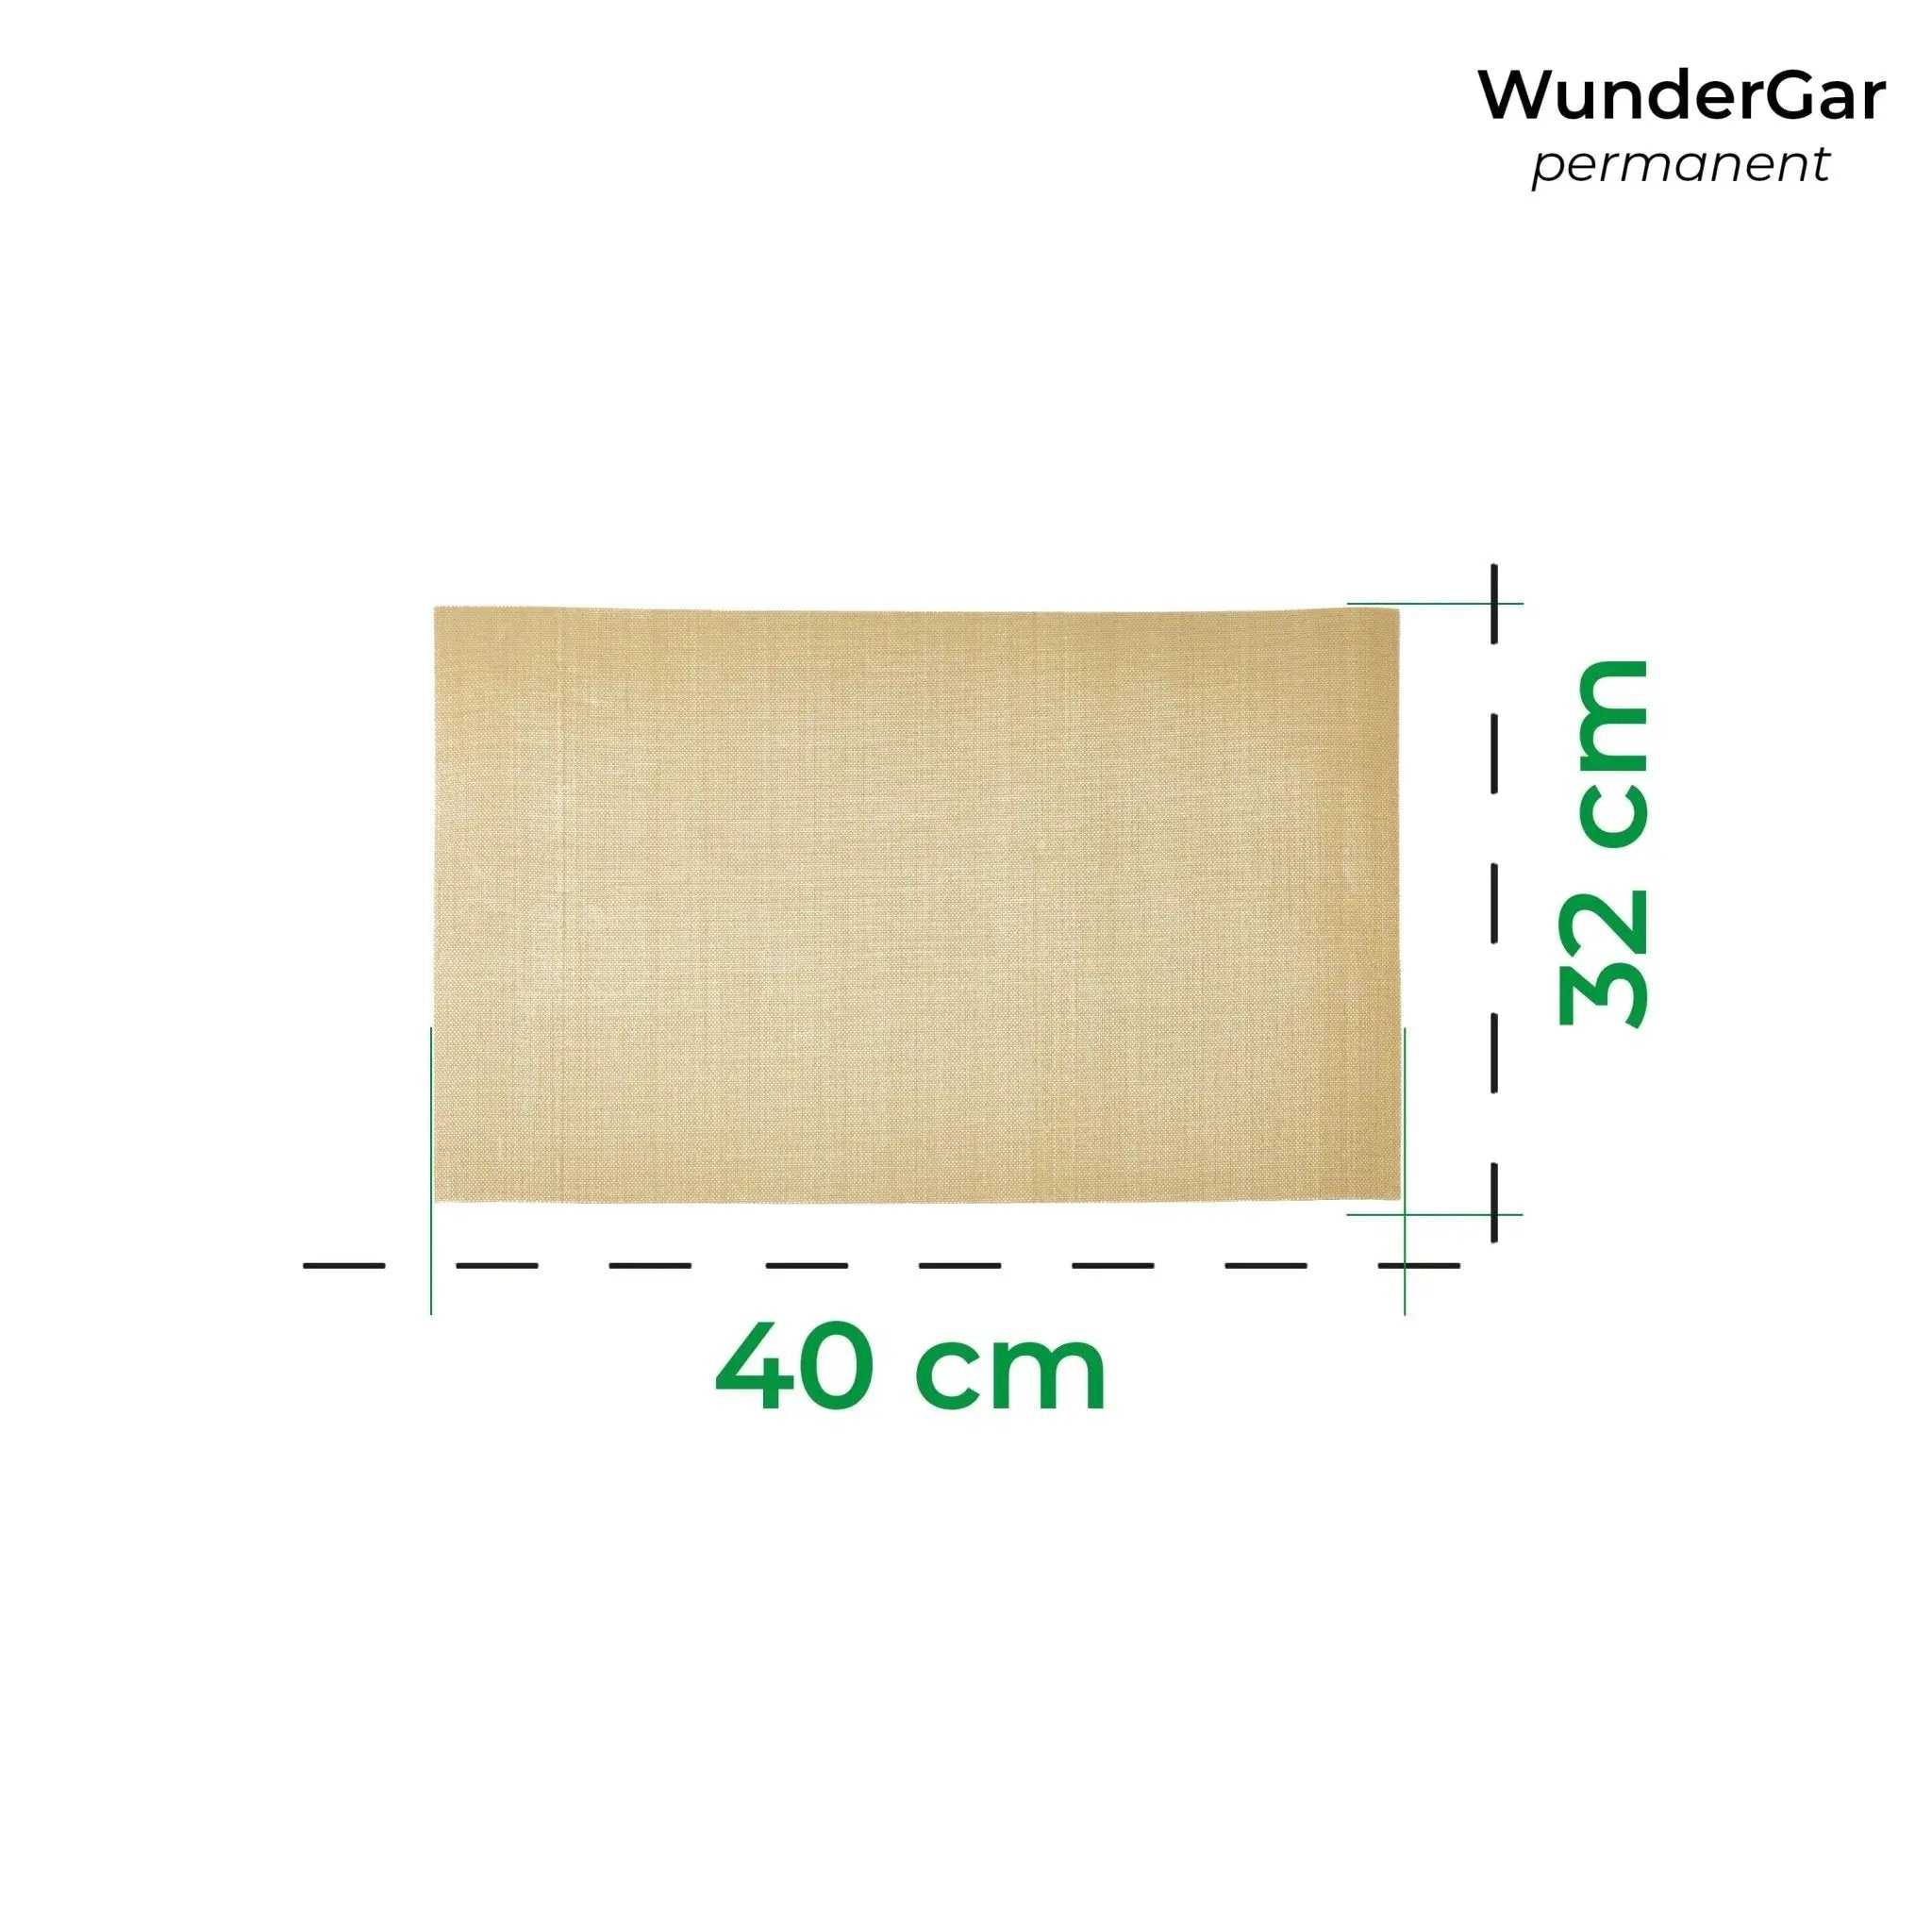 WunderGar® Permanent | Dauerbackfolie für den Backofen - Wundermix GmbH